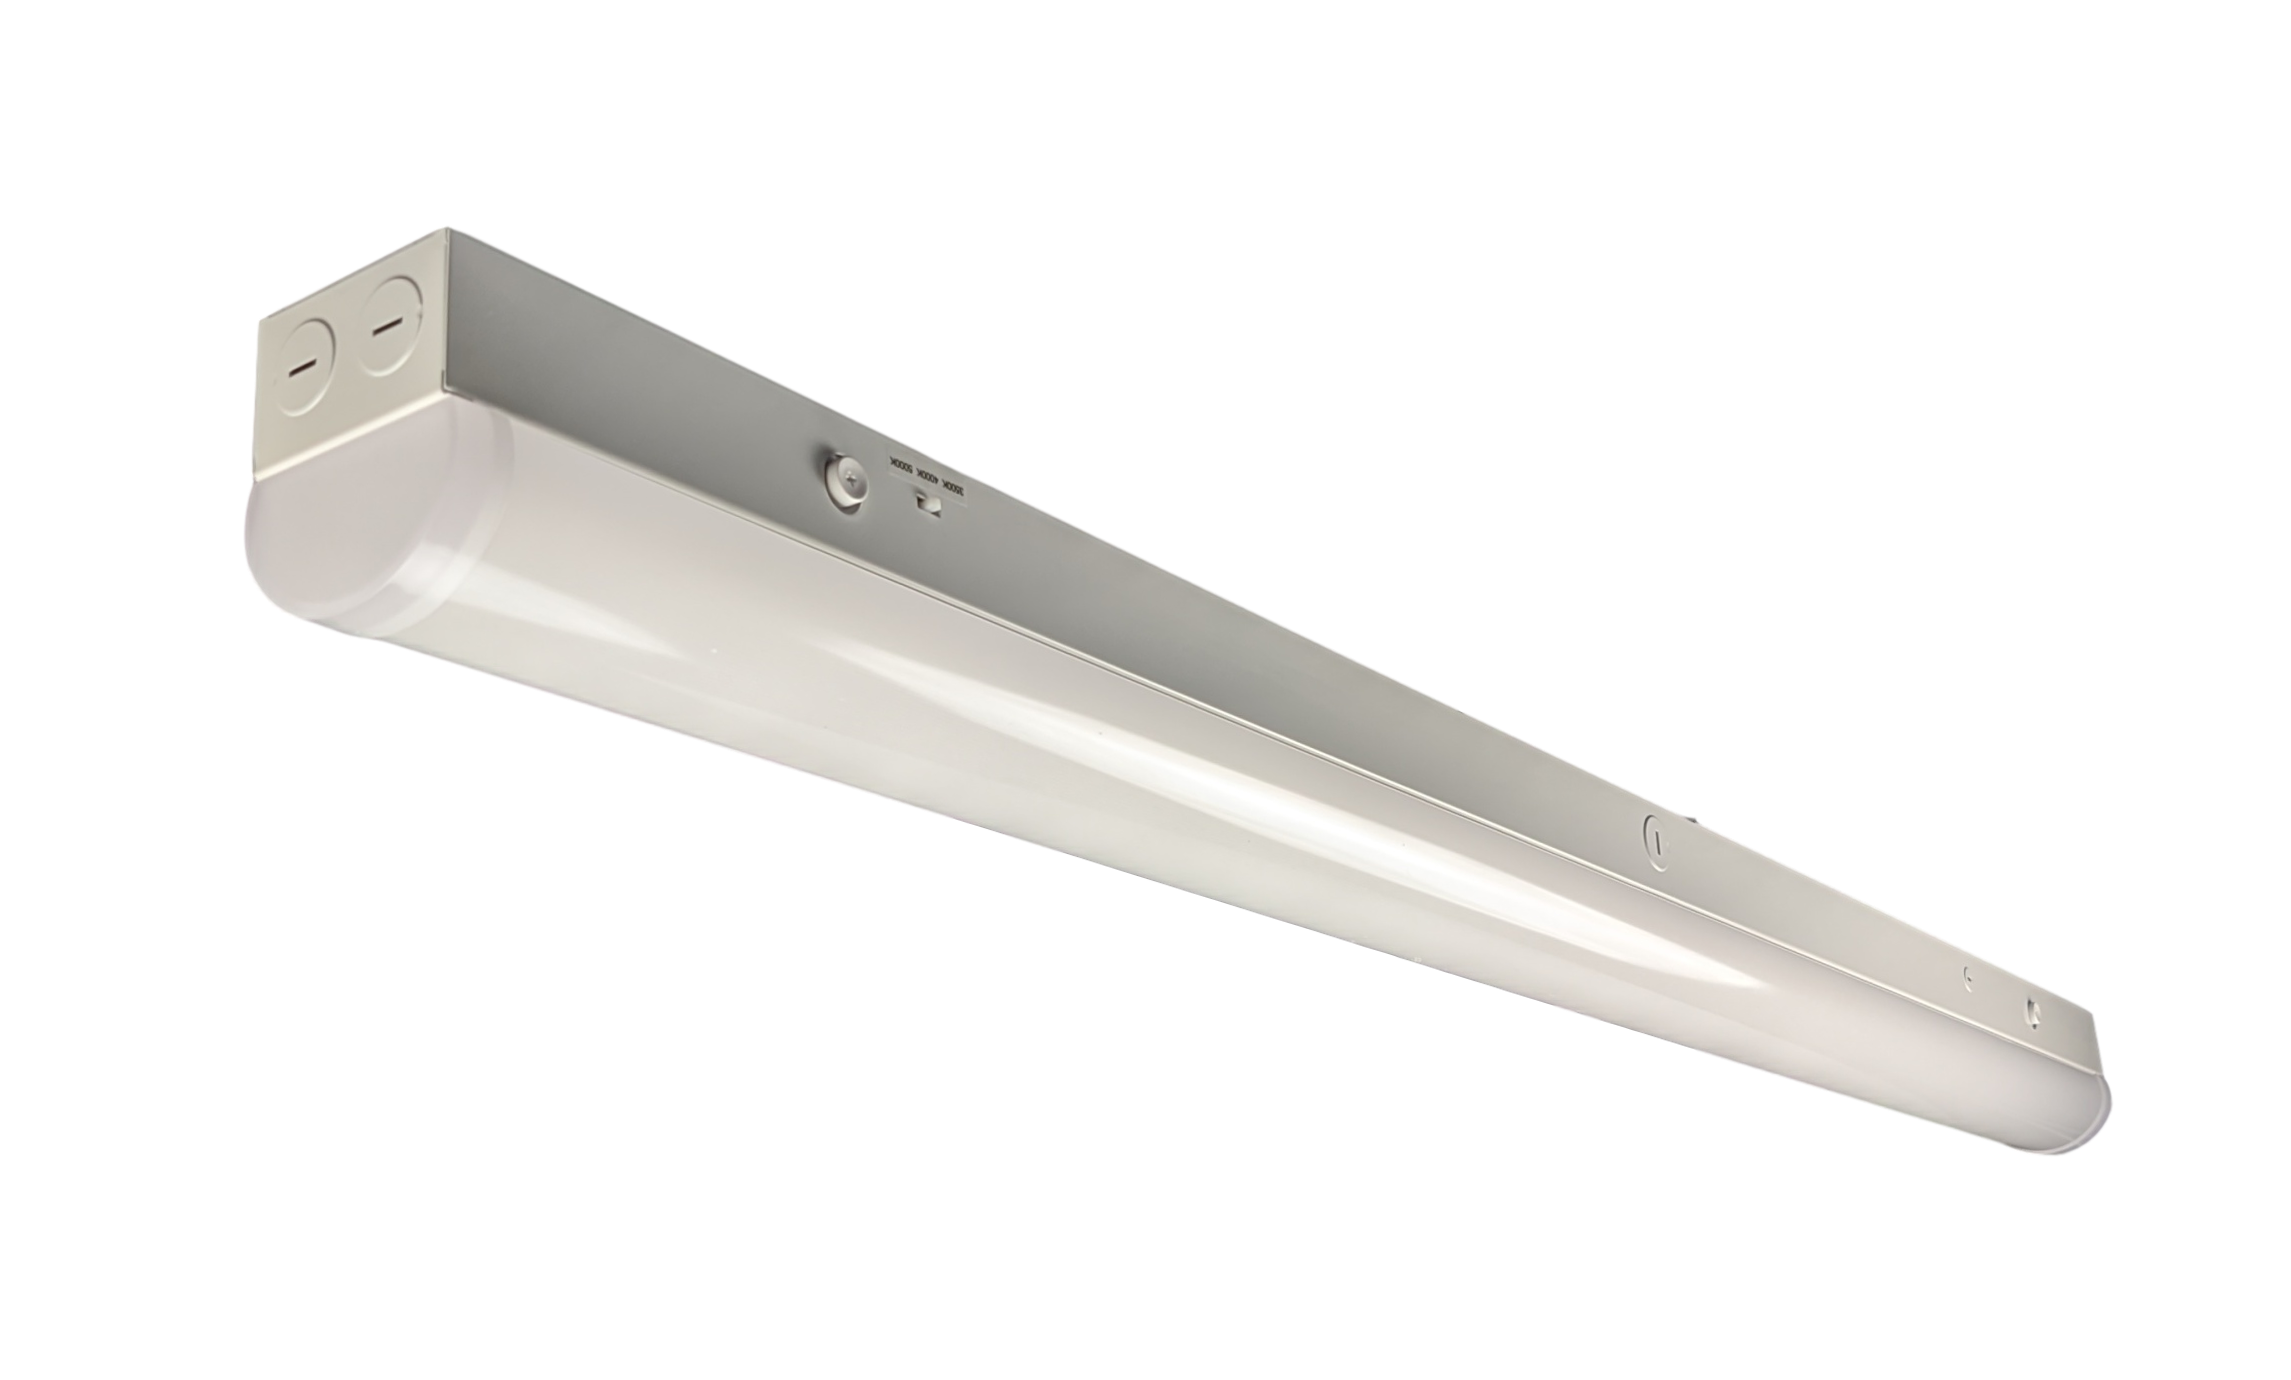 DawnRay 8' LED Commercial Strip Light 8320 lumens 3CCT 3500K/4000K/5000K Switchable